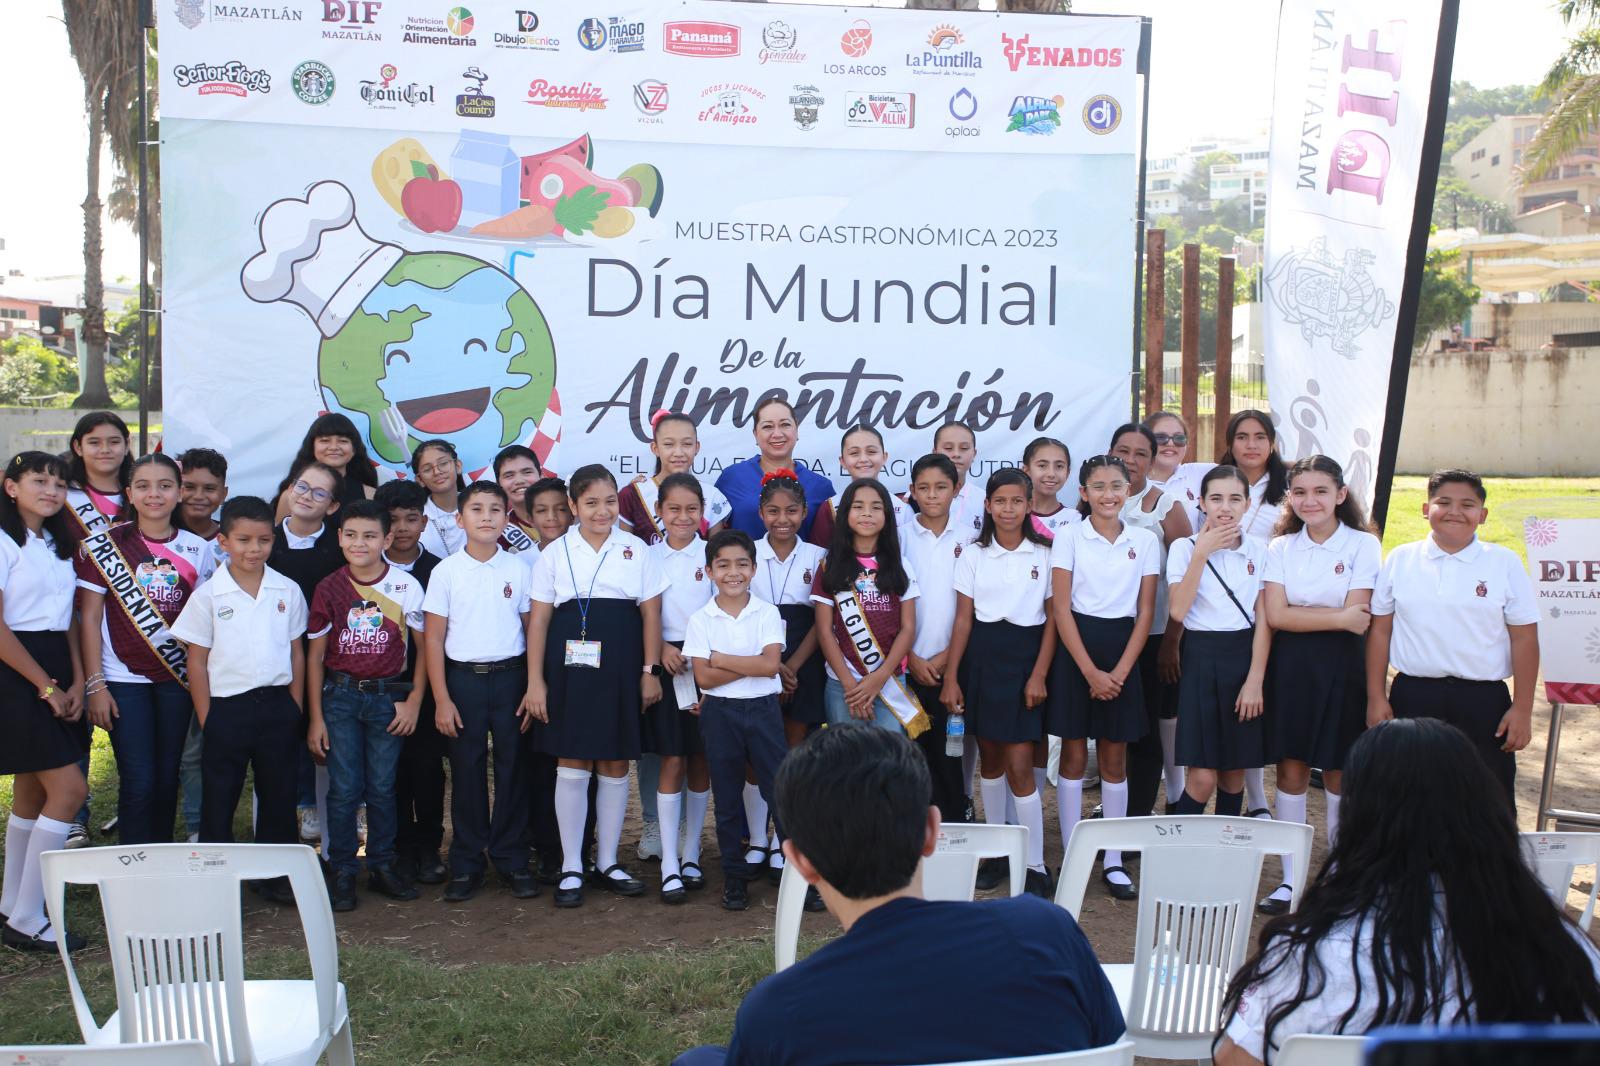 $!Conmemoran en Mazatlán el Día Mundial de la Alimentación